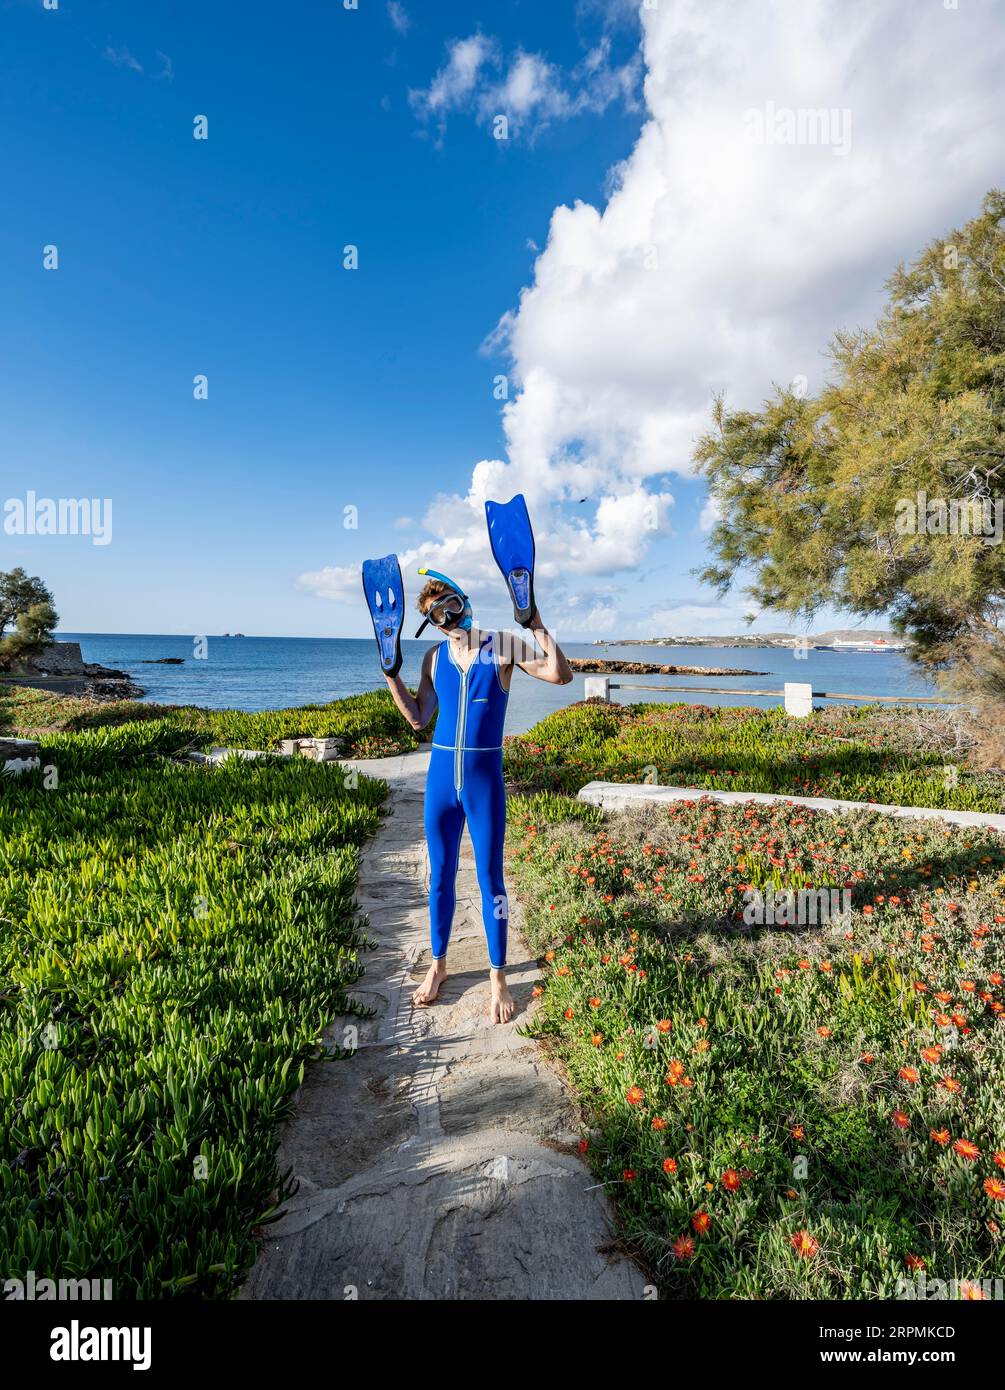 Junger Mann mit Taucherbrille, Schnorchel, blauen Flossen an den Händen und blauem Neoprenanzug, lustig, Paros, Kykladen, Griechenland Stockfoto